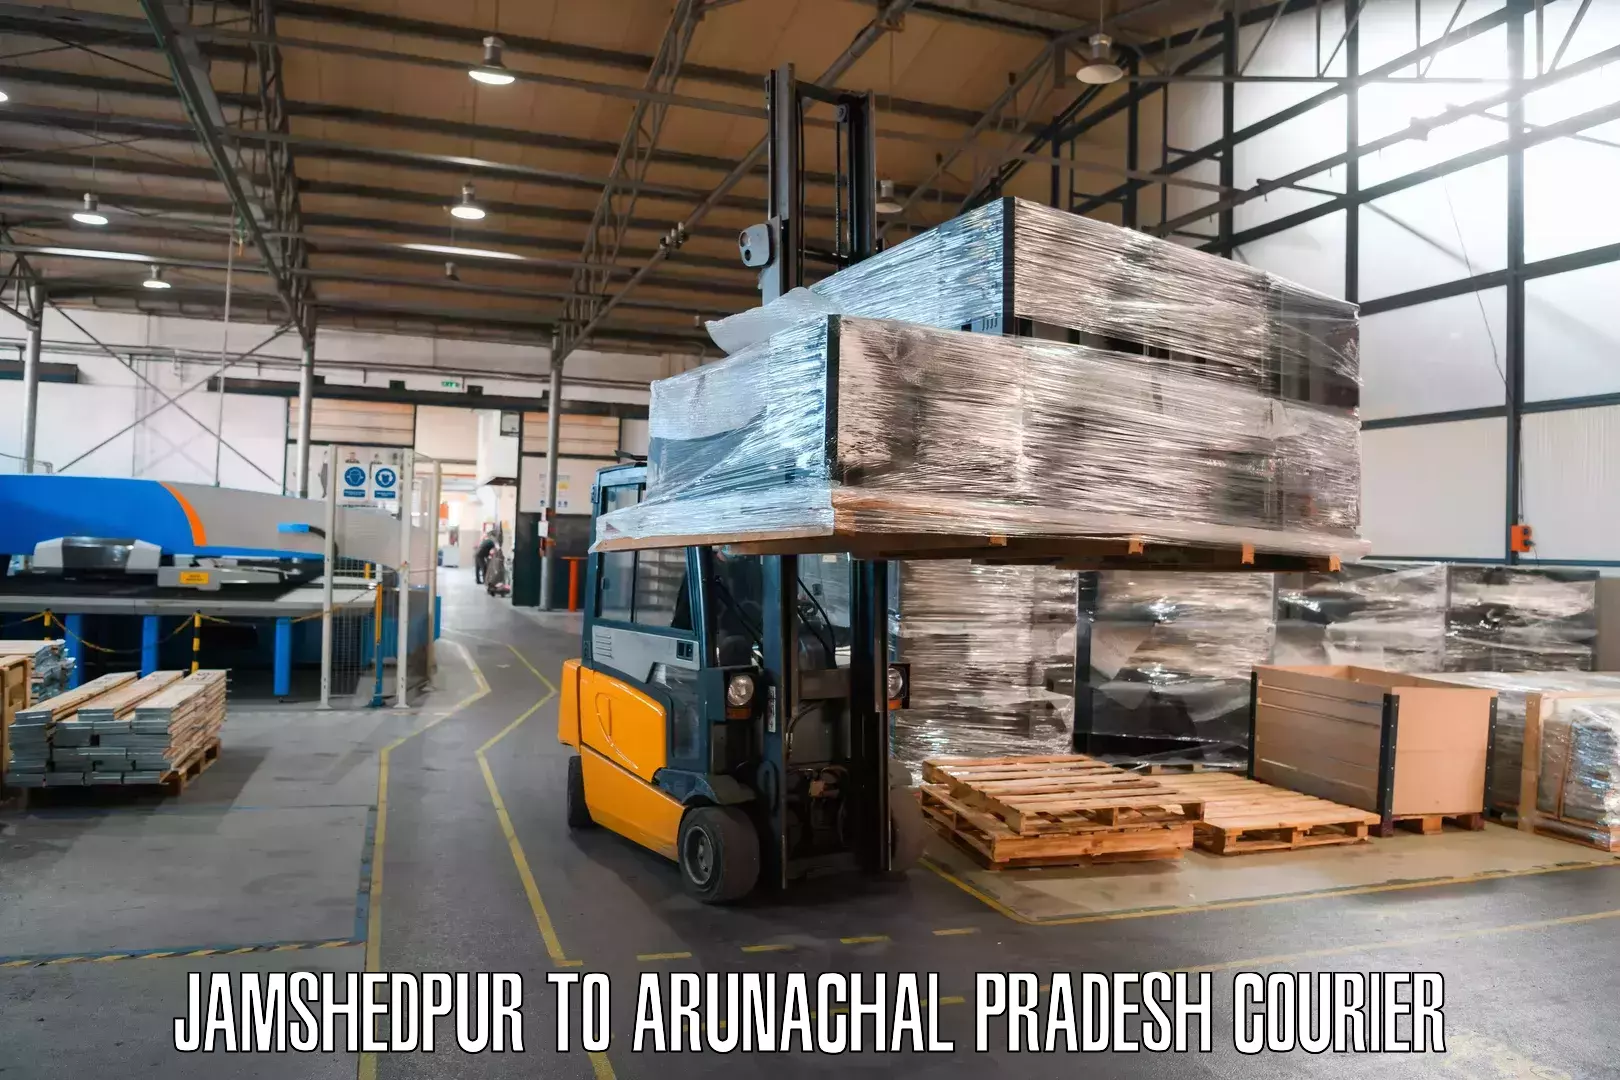 Courier service comparison Jamshedpur to Bomdila